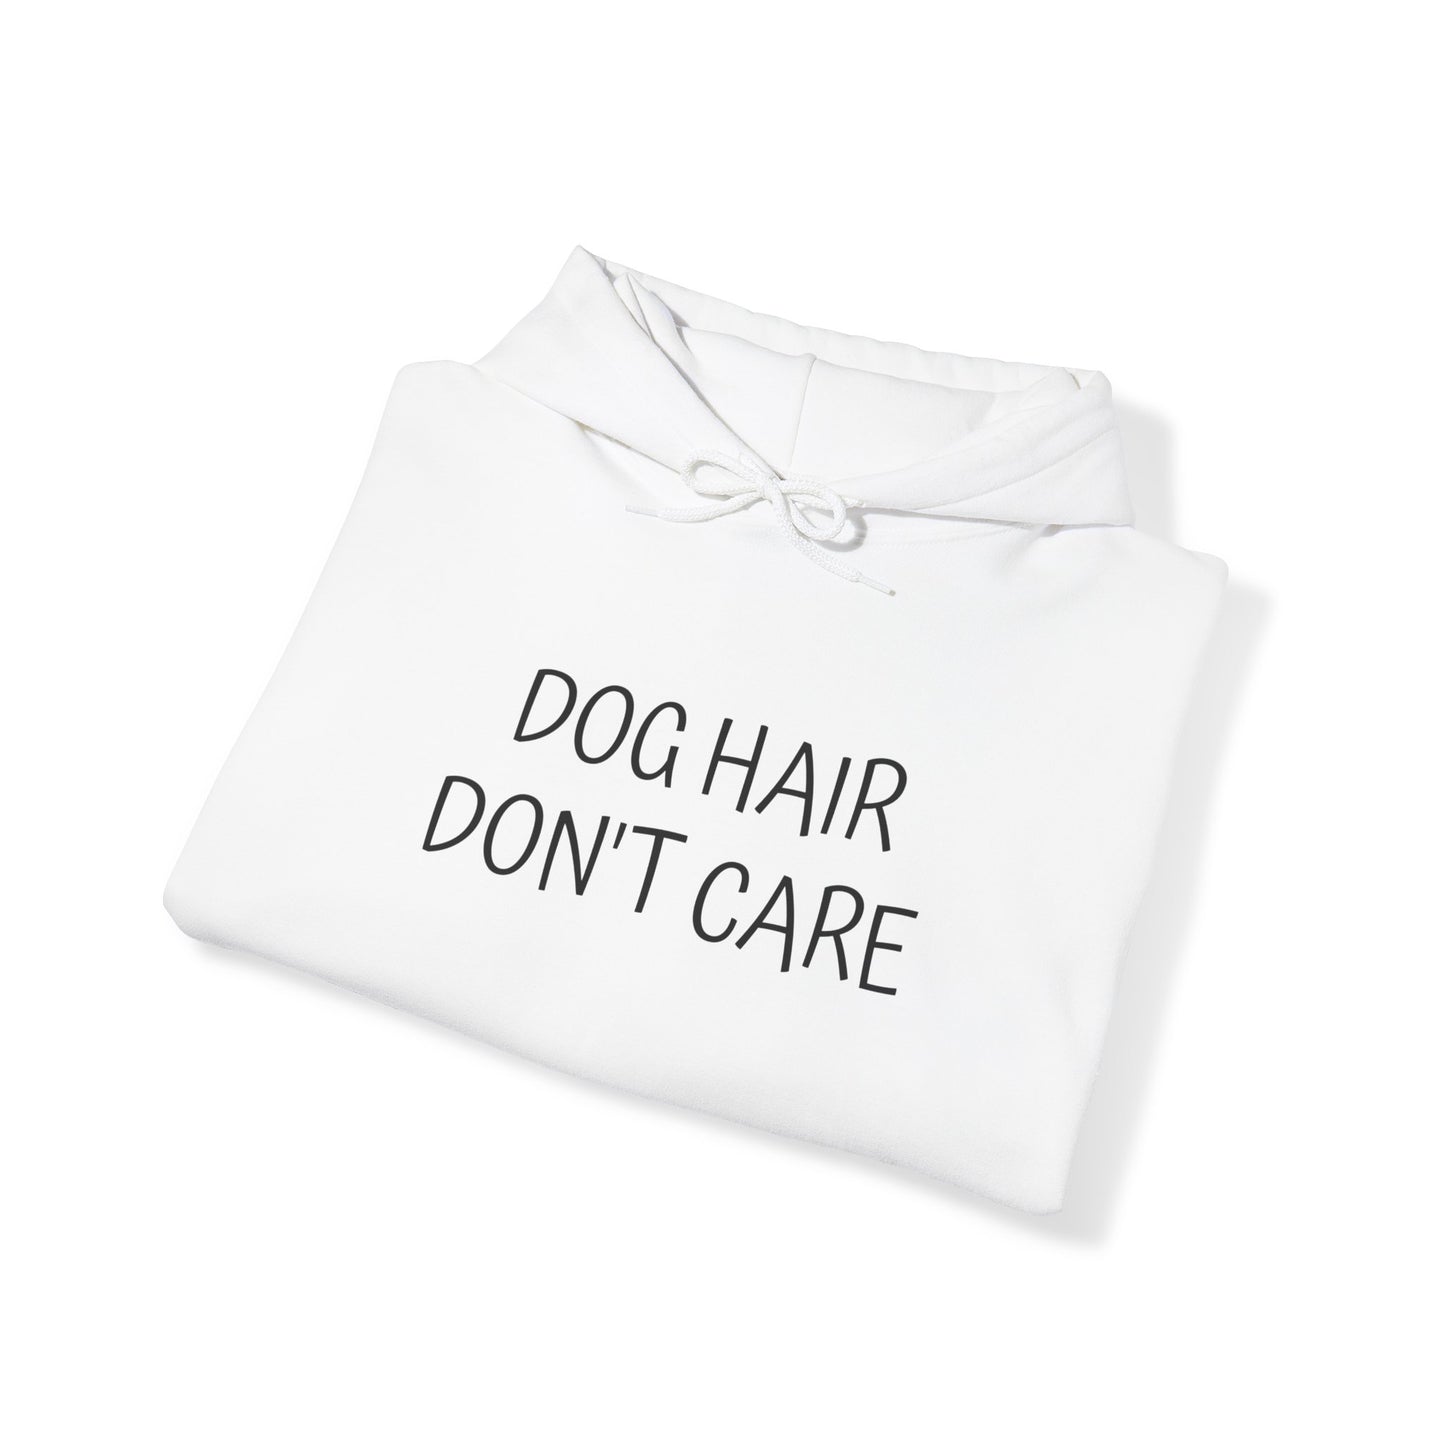 Hettegenser - "Dog hair, don't care"